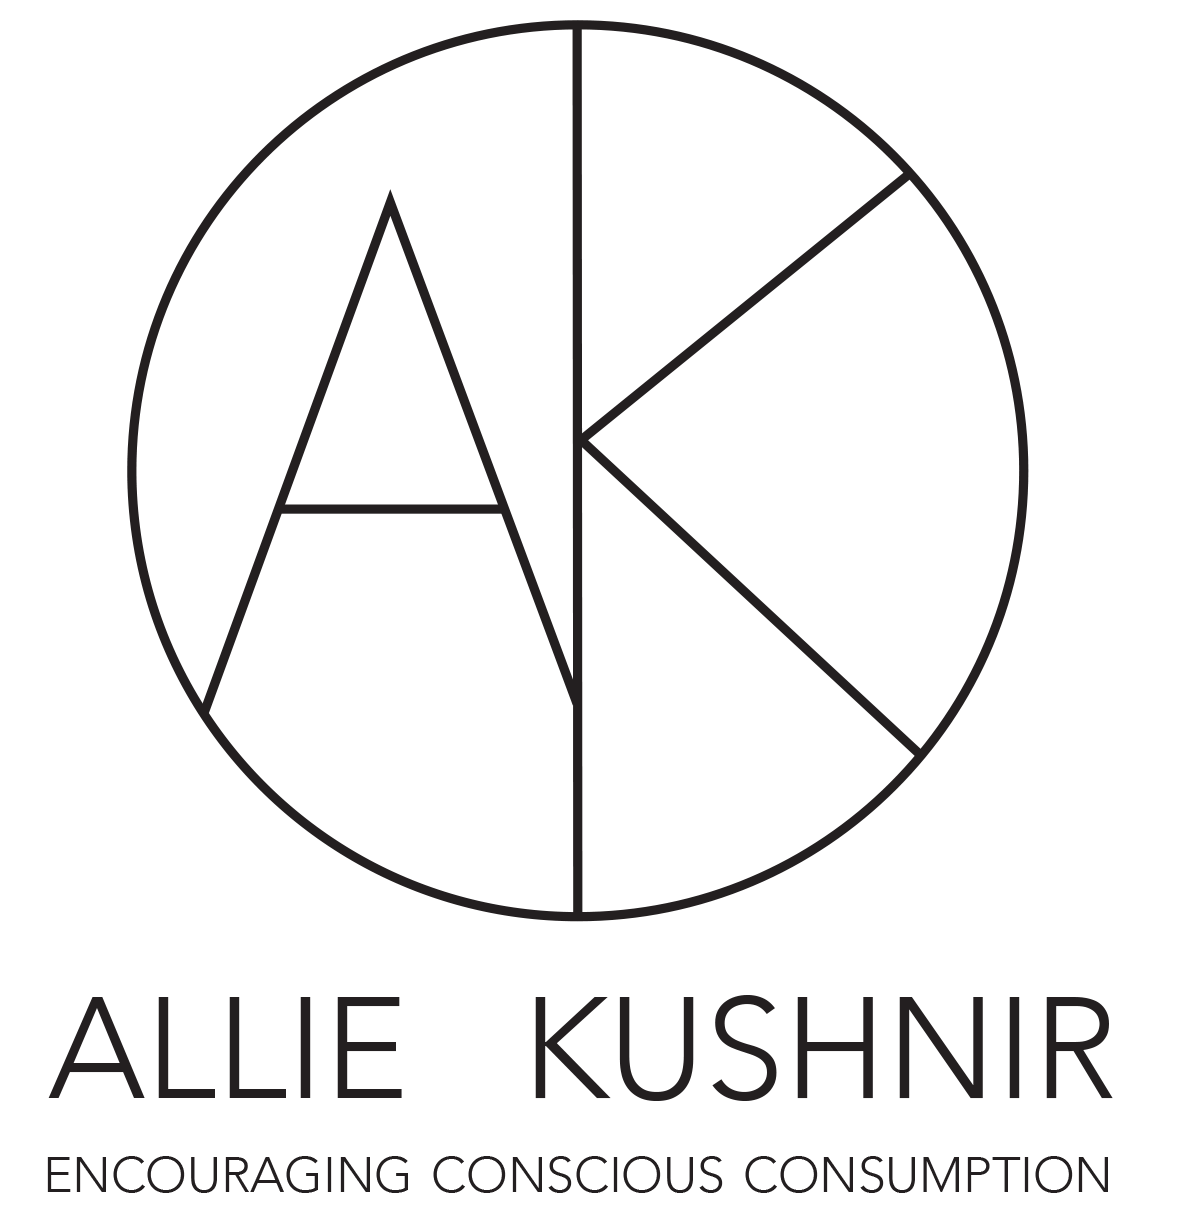 Allie Kushnir